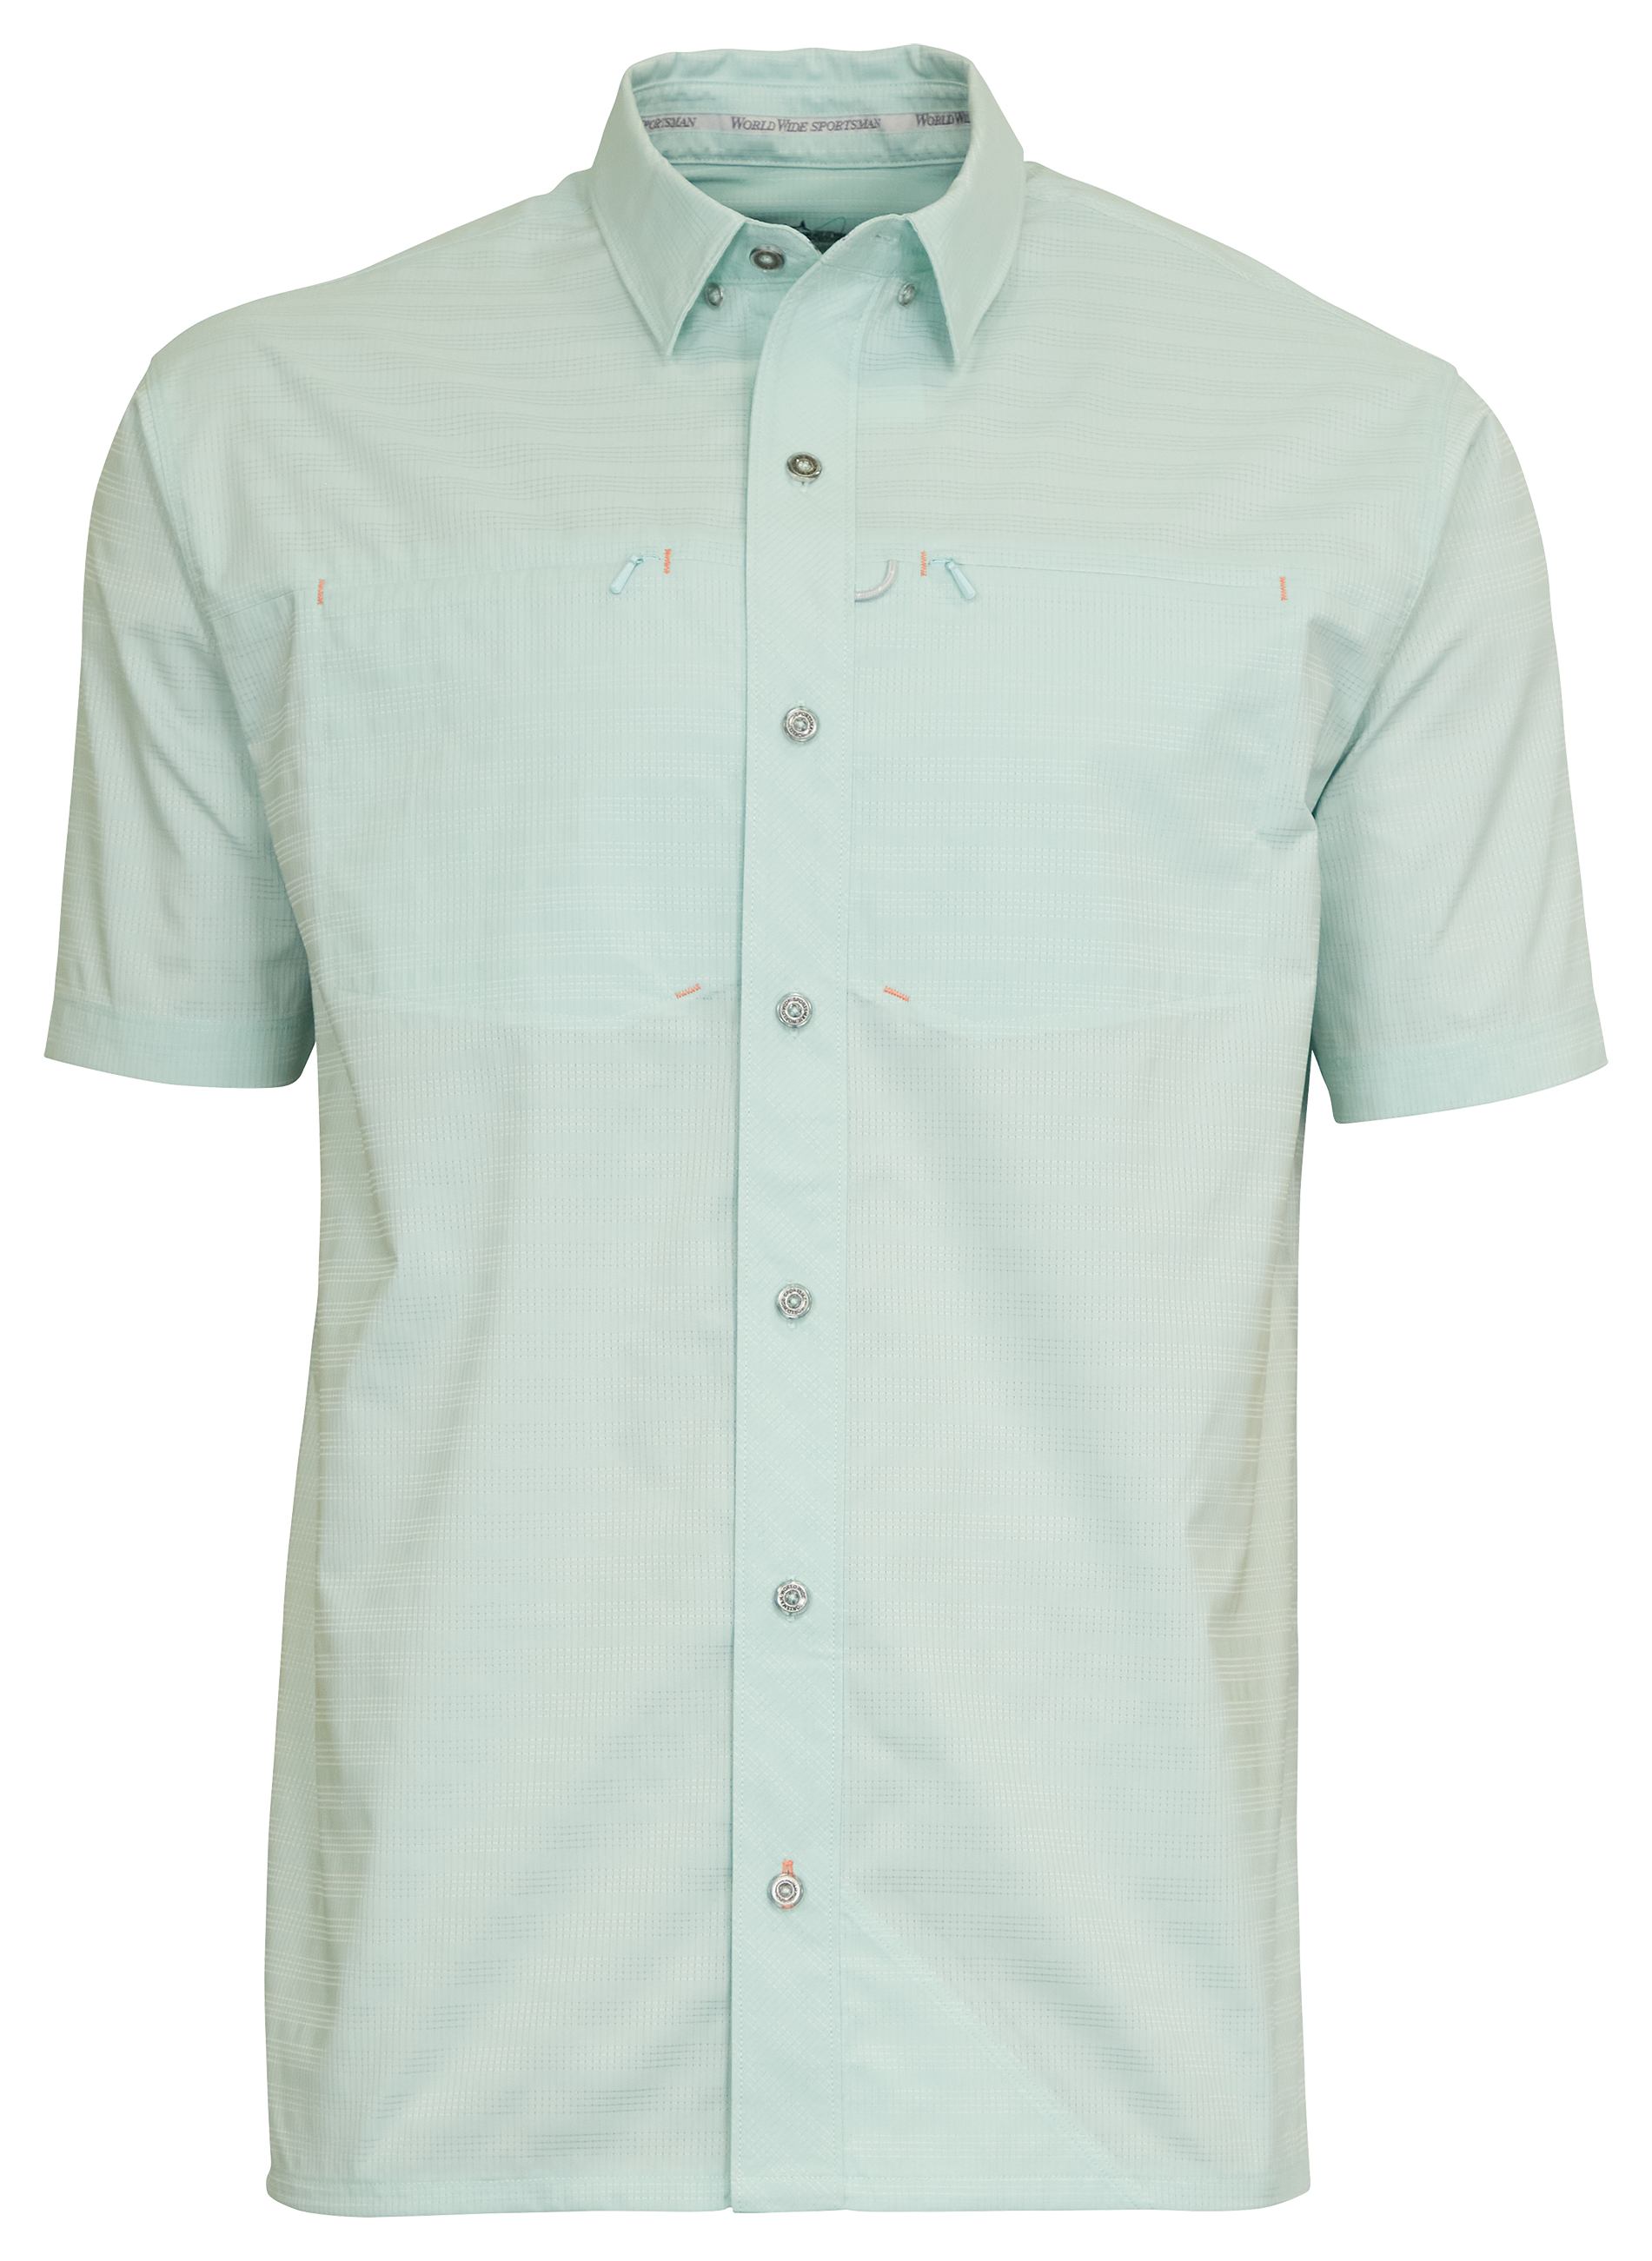 World Wide Sportsman Seacrest 2-Pocket Short-Sleeve Button-Down Shirt for Men - Harbor Gray - S